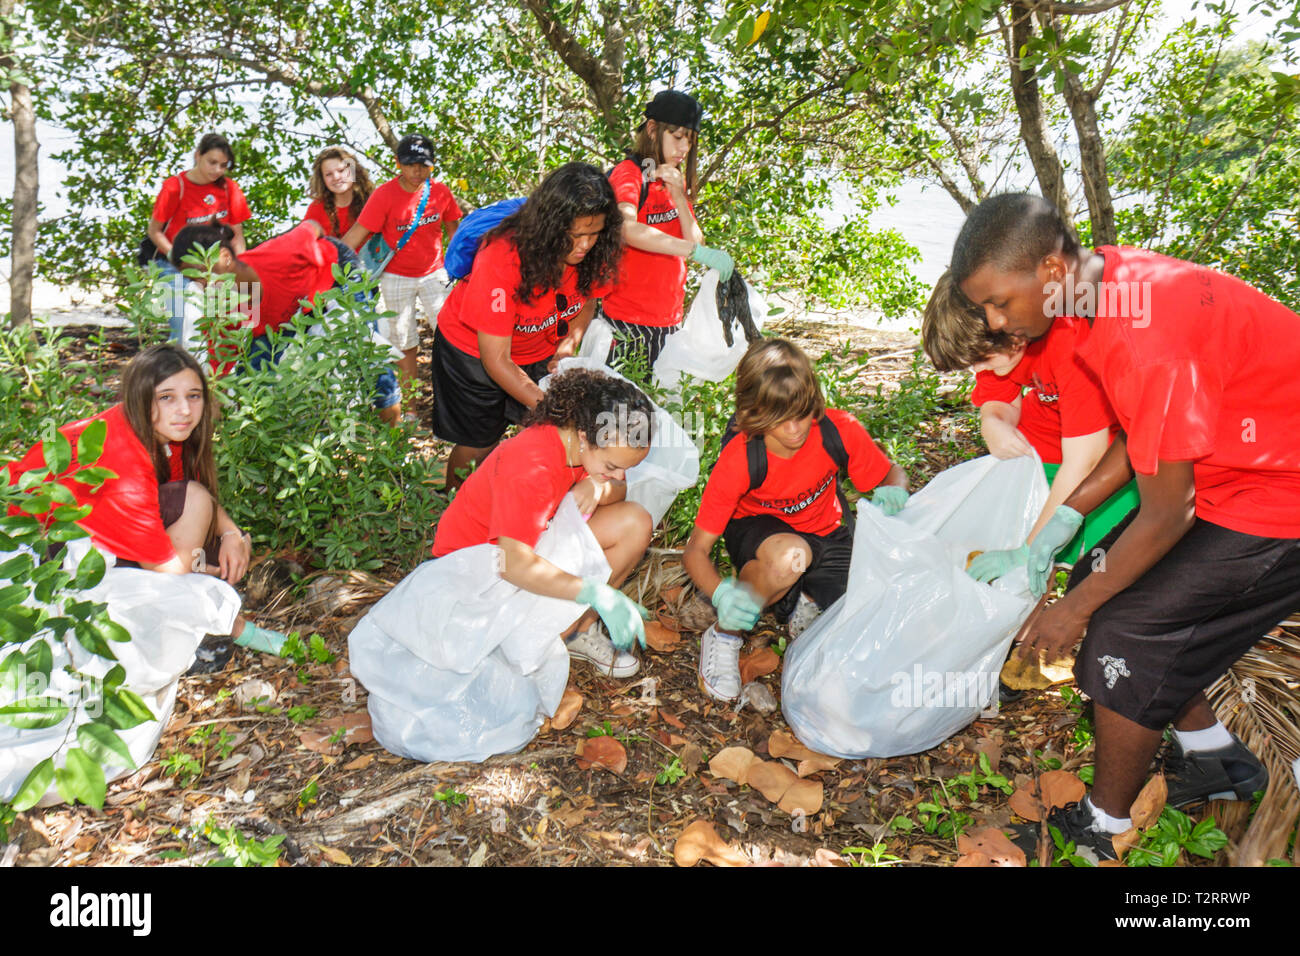 Miami Florida,pulizia pulita della comunità,volontari volontari volontari volontari lavoratori del lavoro,lavorare insieme aiuto,aiutare studenti studenti Hispani Foto Stock